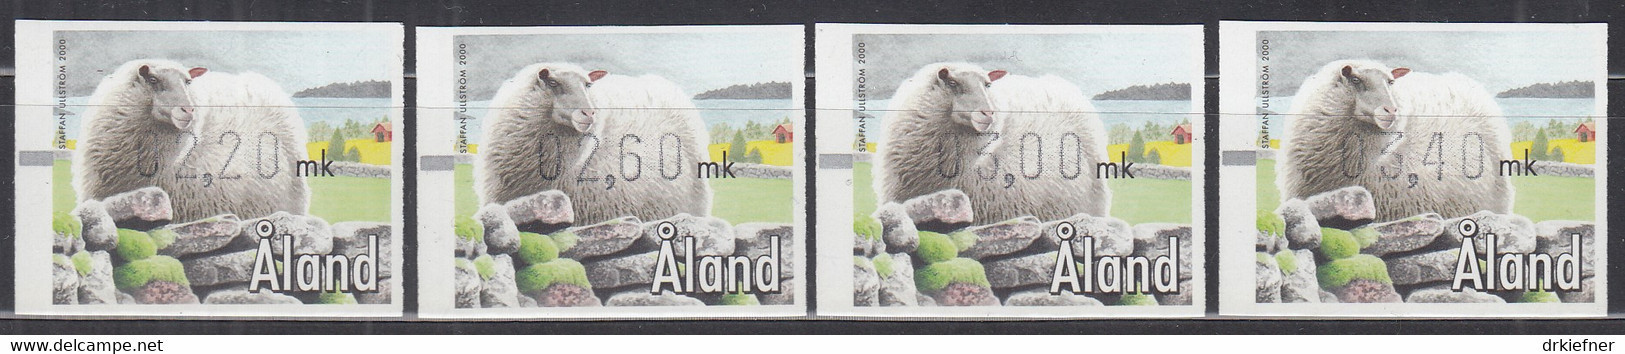 ALAND  Automatenmarke ATM 11 S1, Postfrisch **, 2000 - Aland